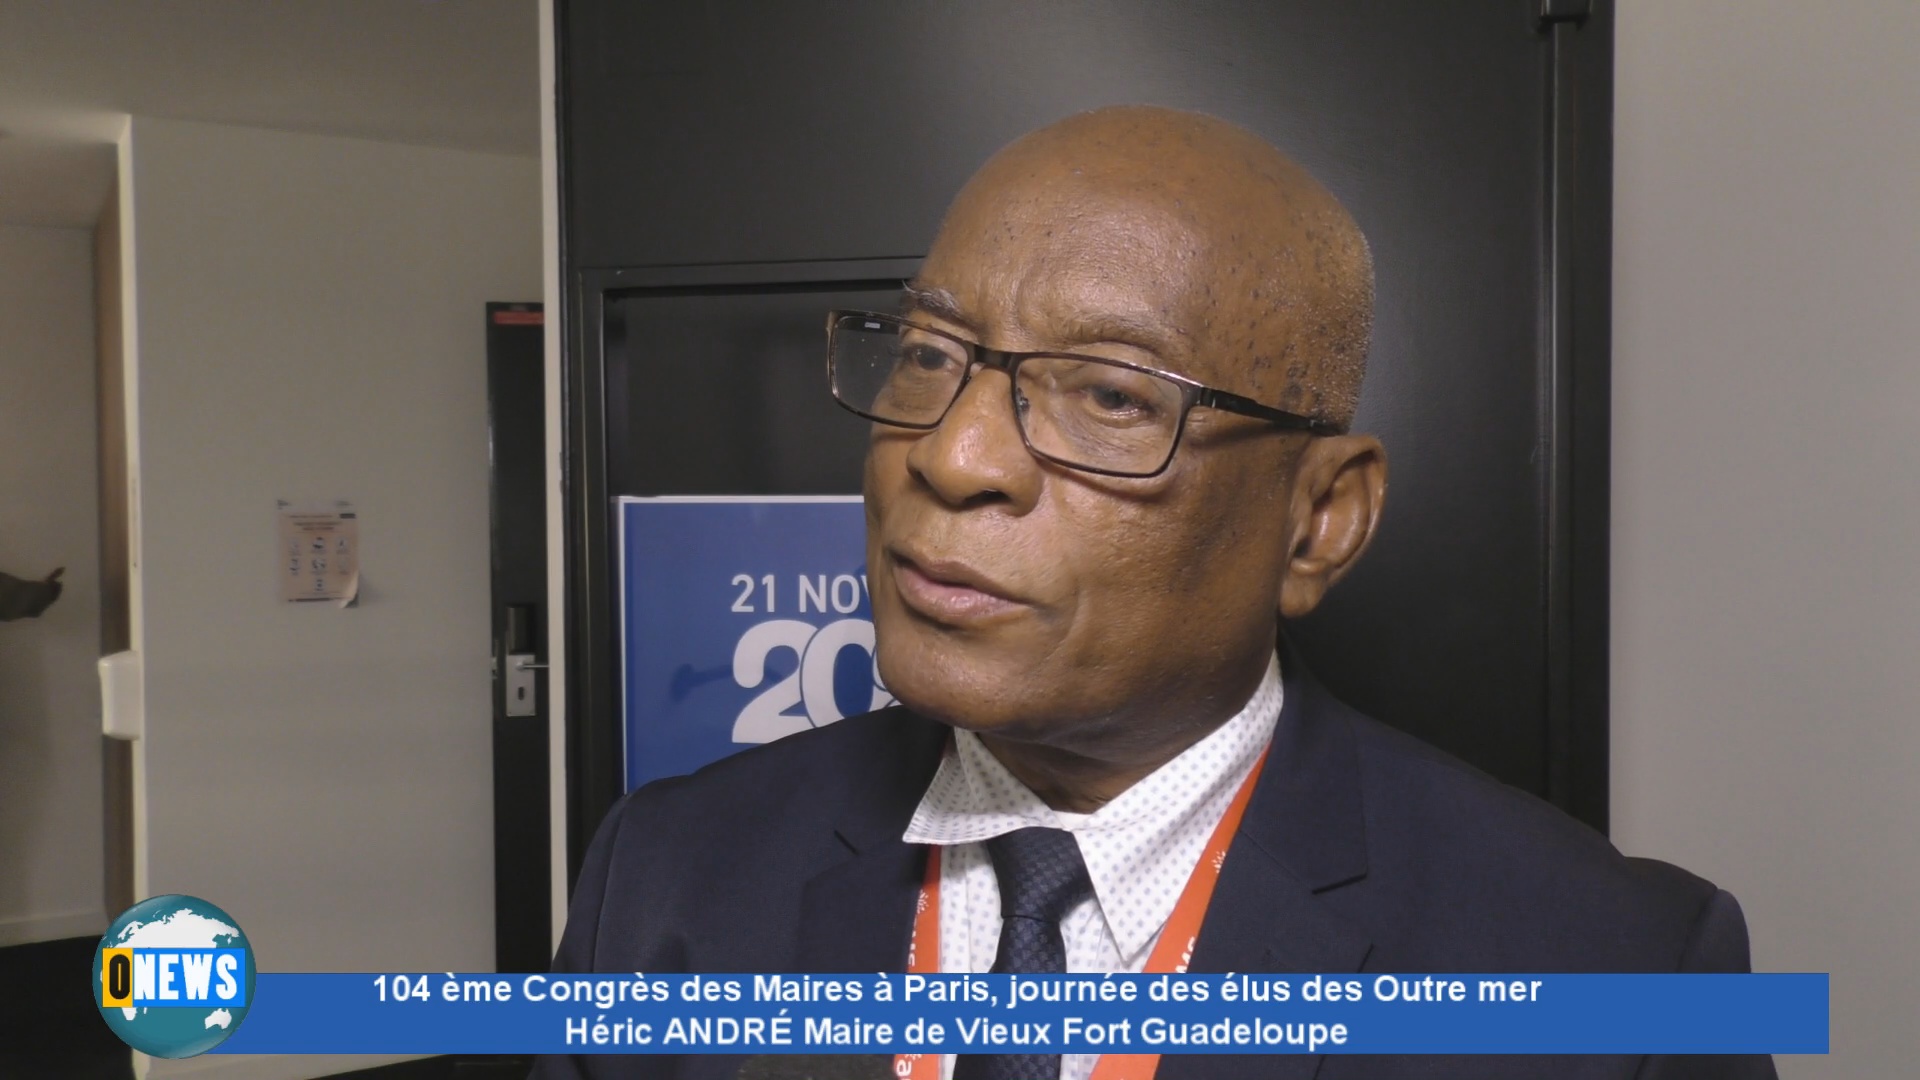 [Vidéo] Congrès des Maires à Paris avec Héric ANDRÉ Maire de Vieux Fort Guadeloupe